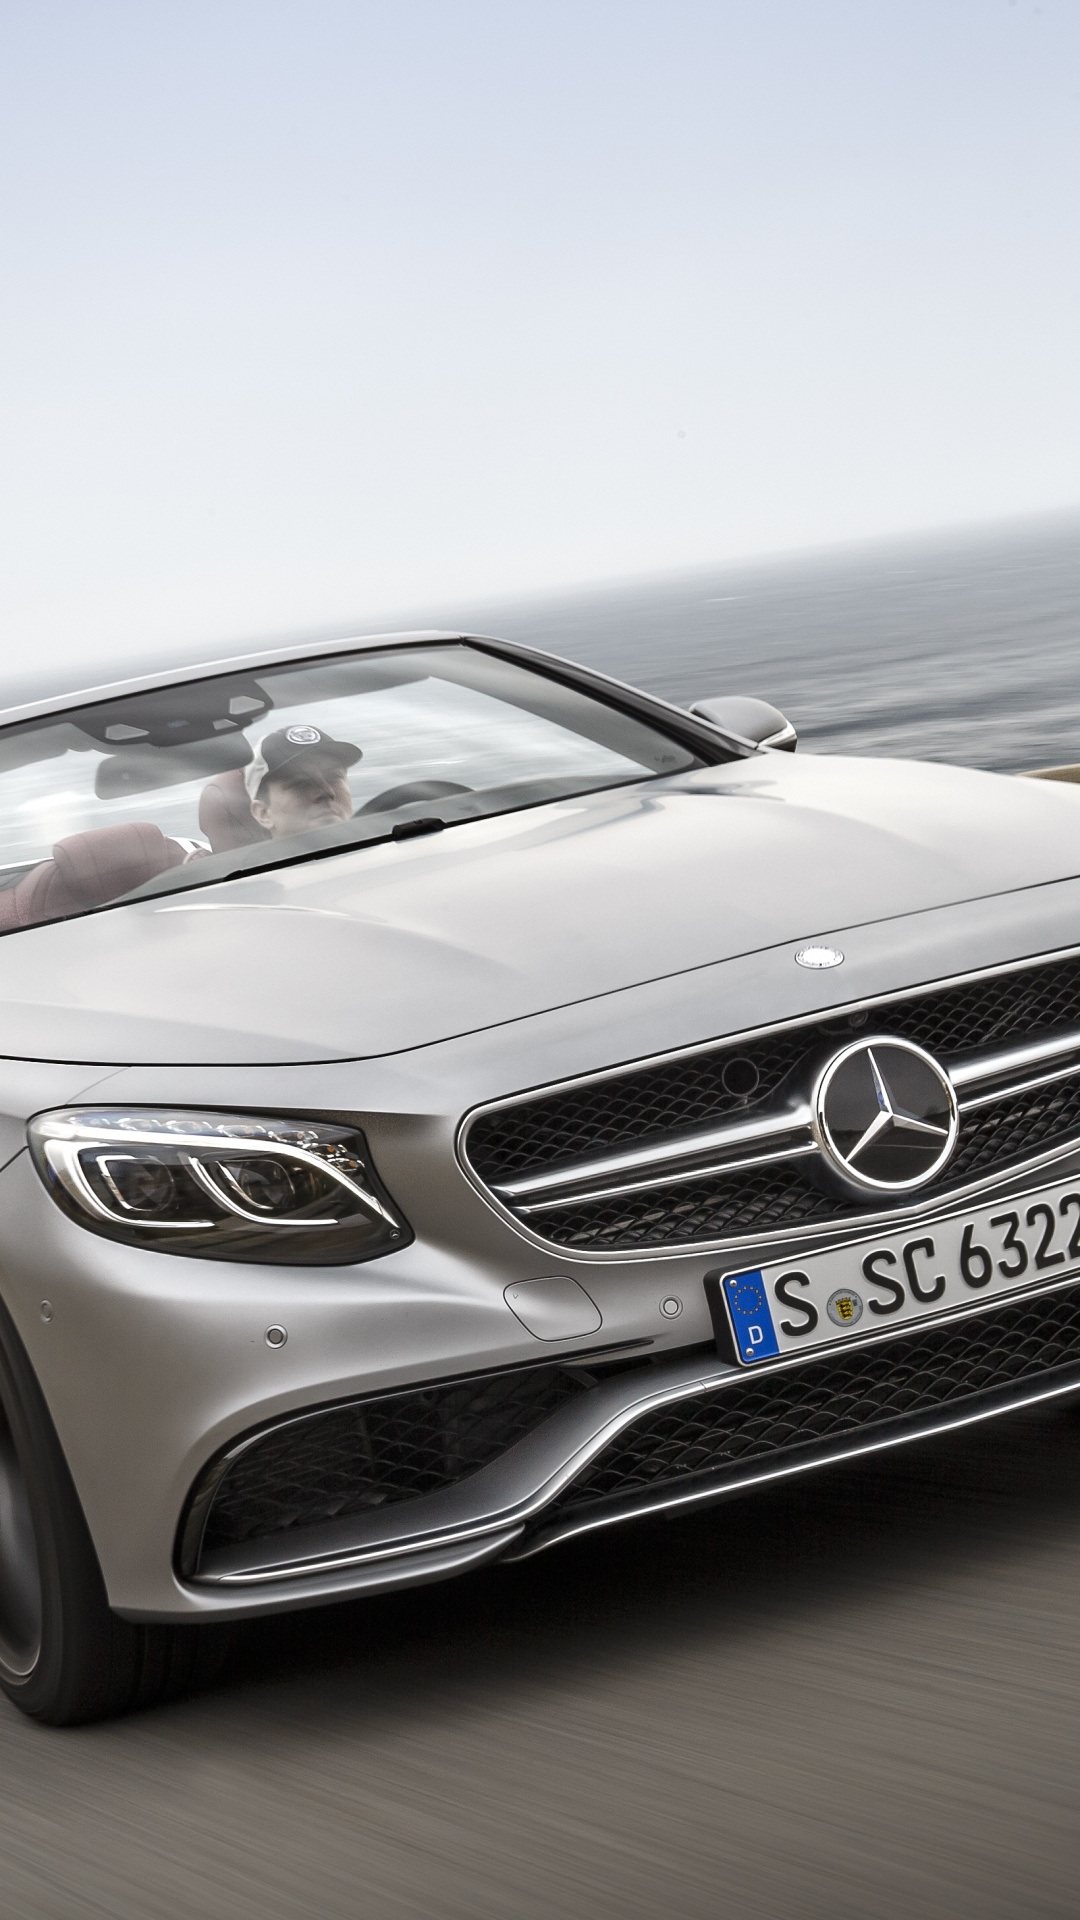 Mercedes Benz Coupé Convertible Gris en la Carretera Durante el Día. Wallpaper in 1080x1920 Resolution